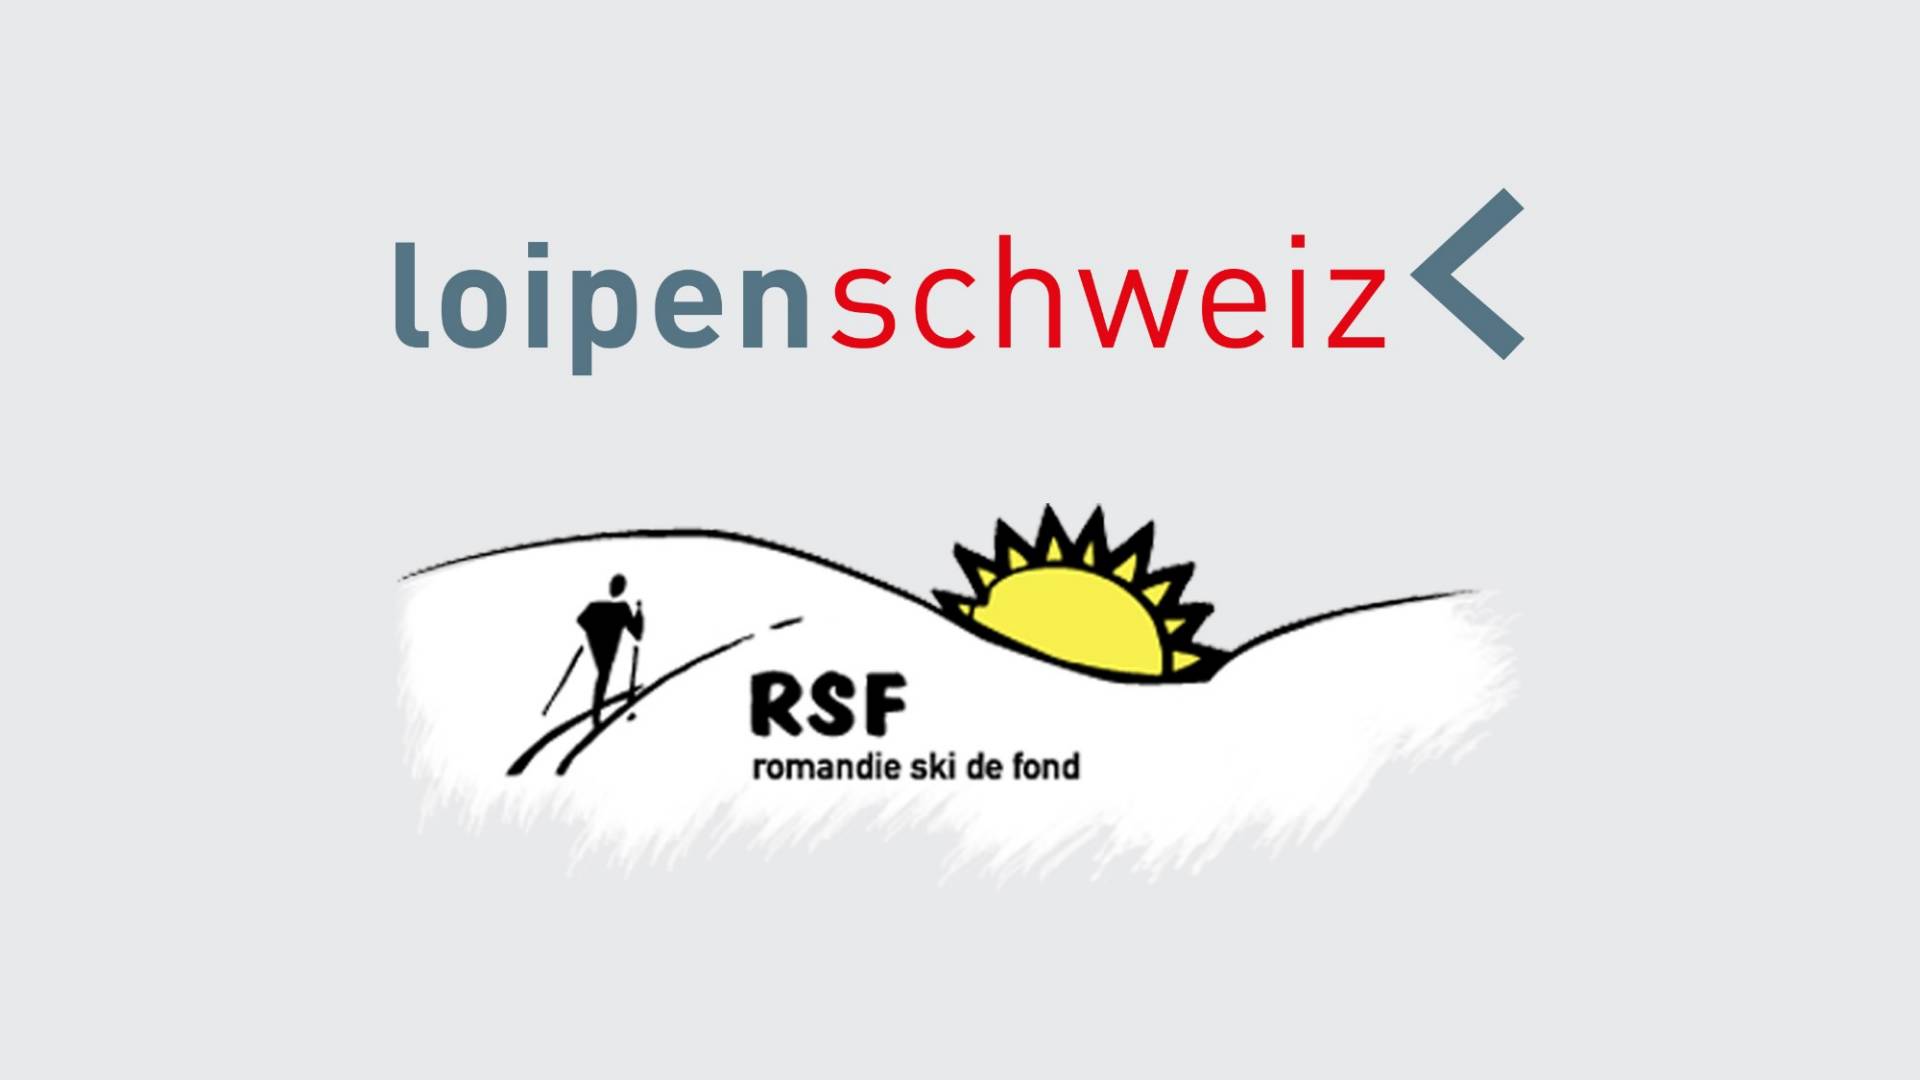 logo-loipen-schweiz-rsf